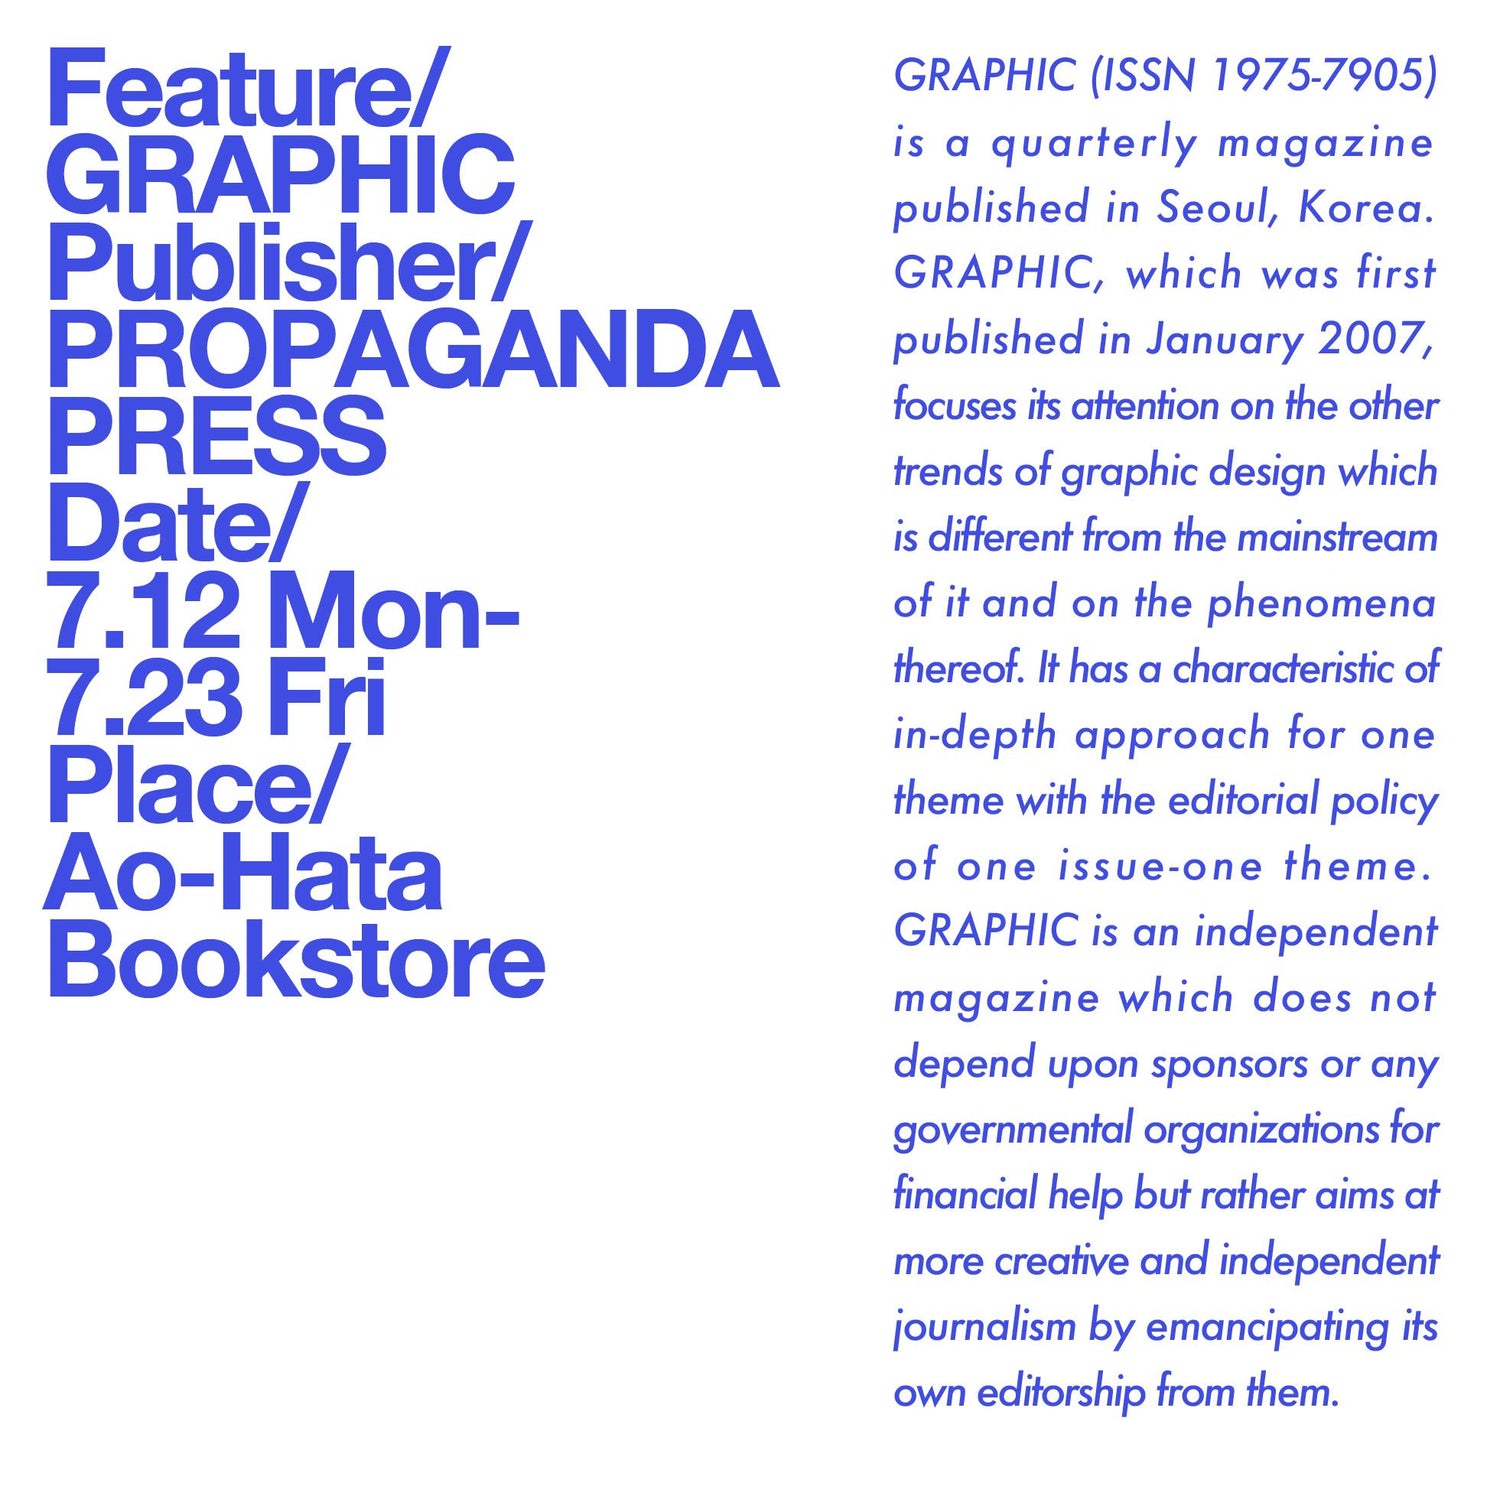 Feature: GRAPHIC / propaganda press